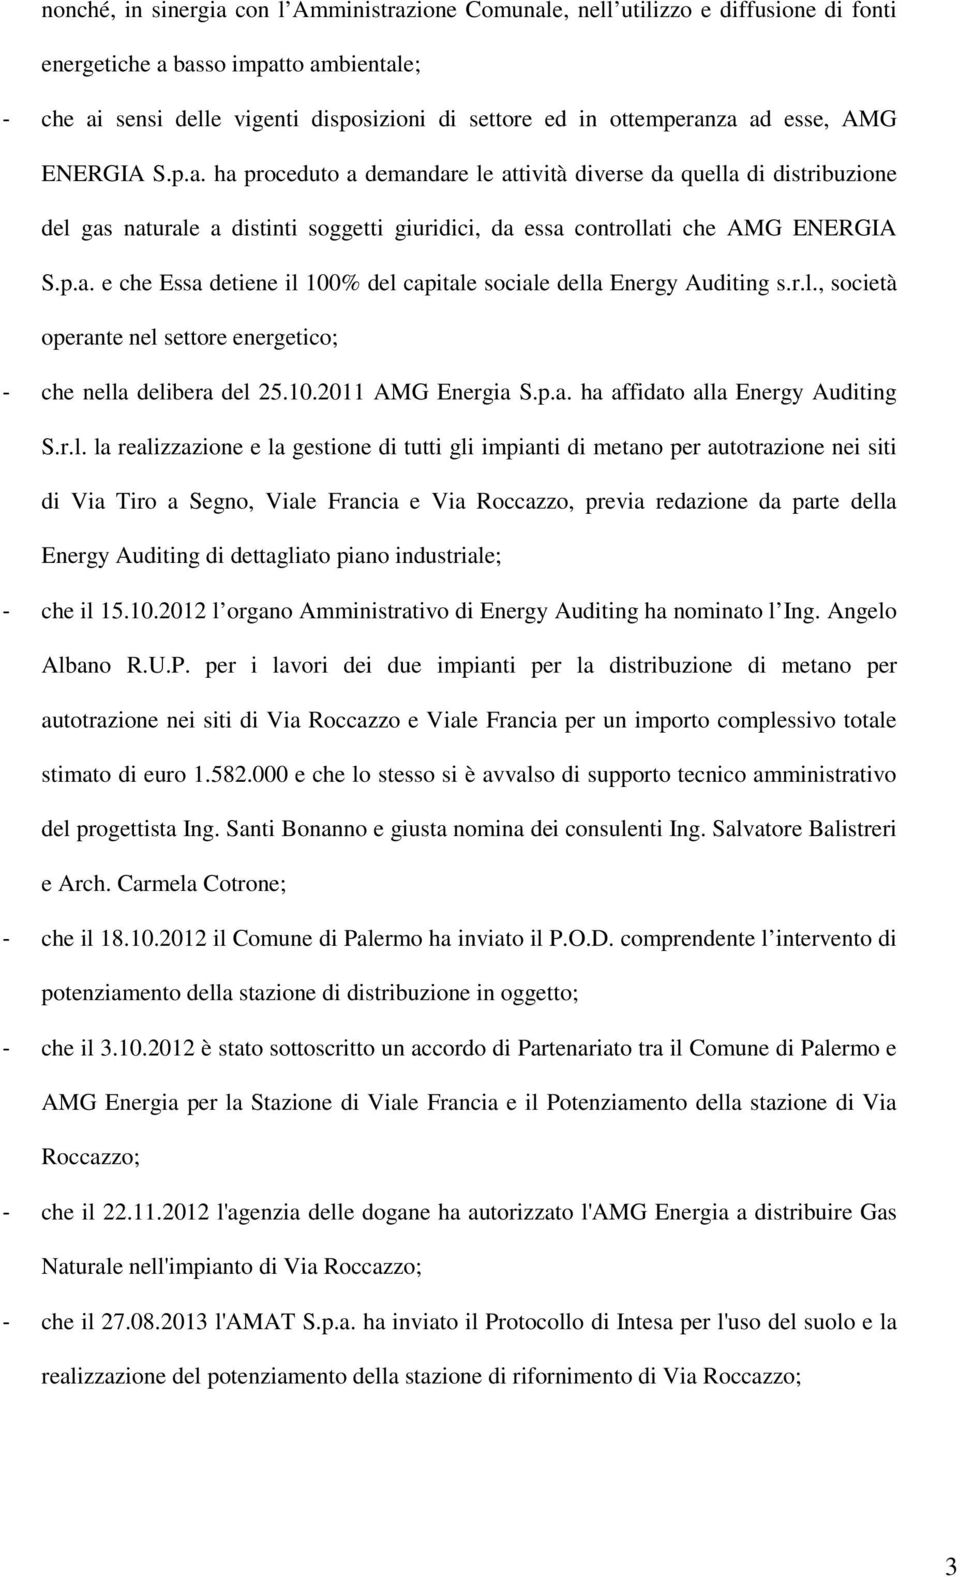 r.l., società operante nel settore energetico; - che nella delibera del 25.10.2011 AMG Energia S.p.a. ha affidato alla Energy Auditing S.r.l. la realizzazione e la gestione di tutti gli impianti di